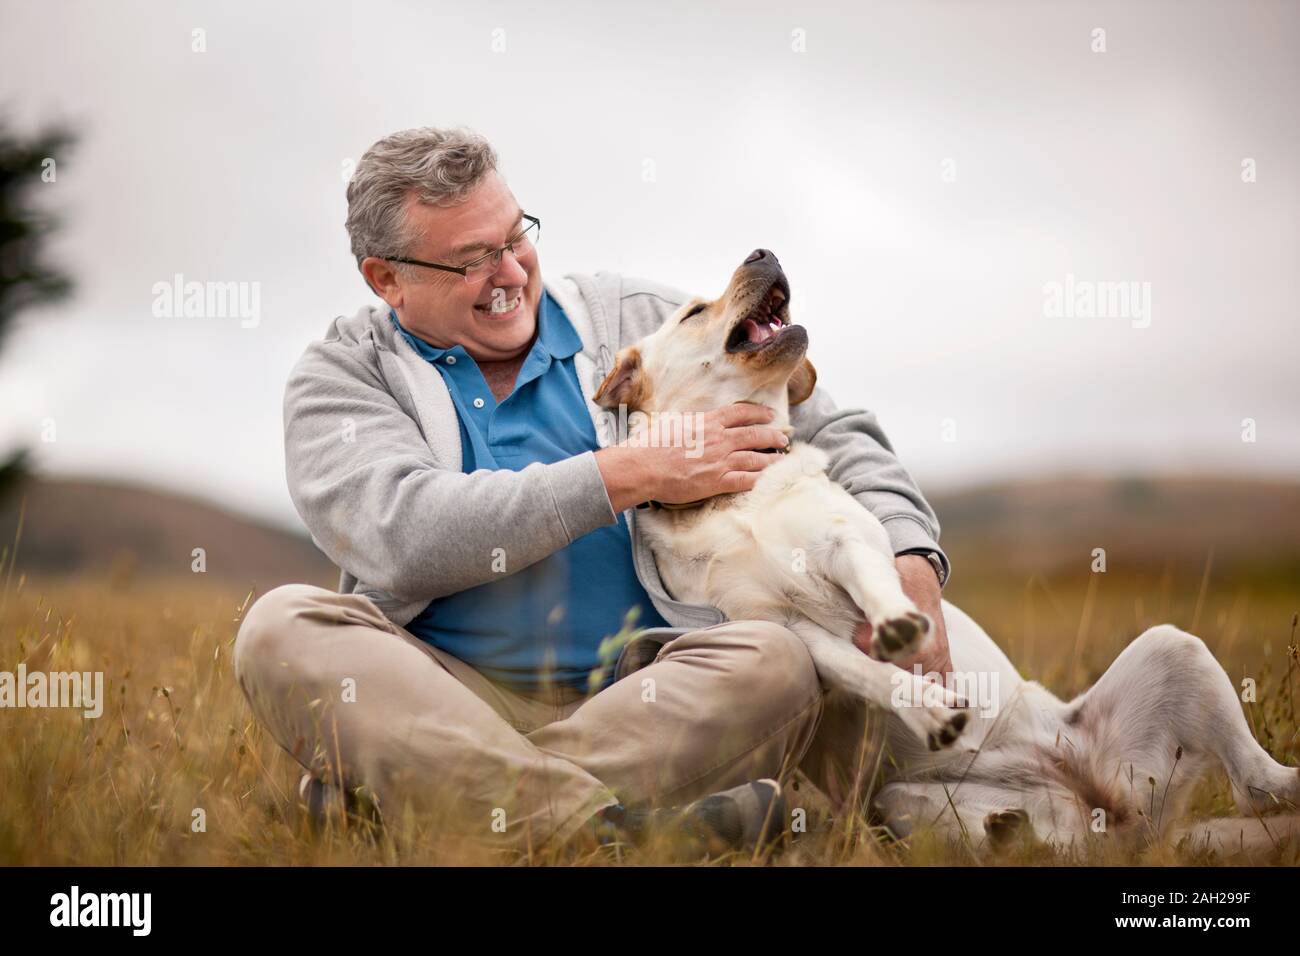 Lächelnd reifer Mann spielt mit seinem Hund in einem ländlichen Bereich Stockfoto